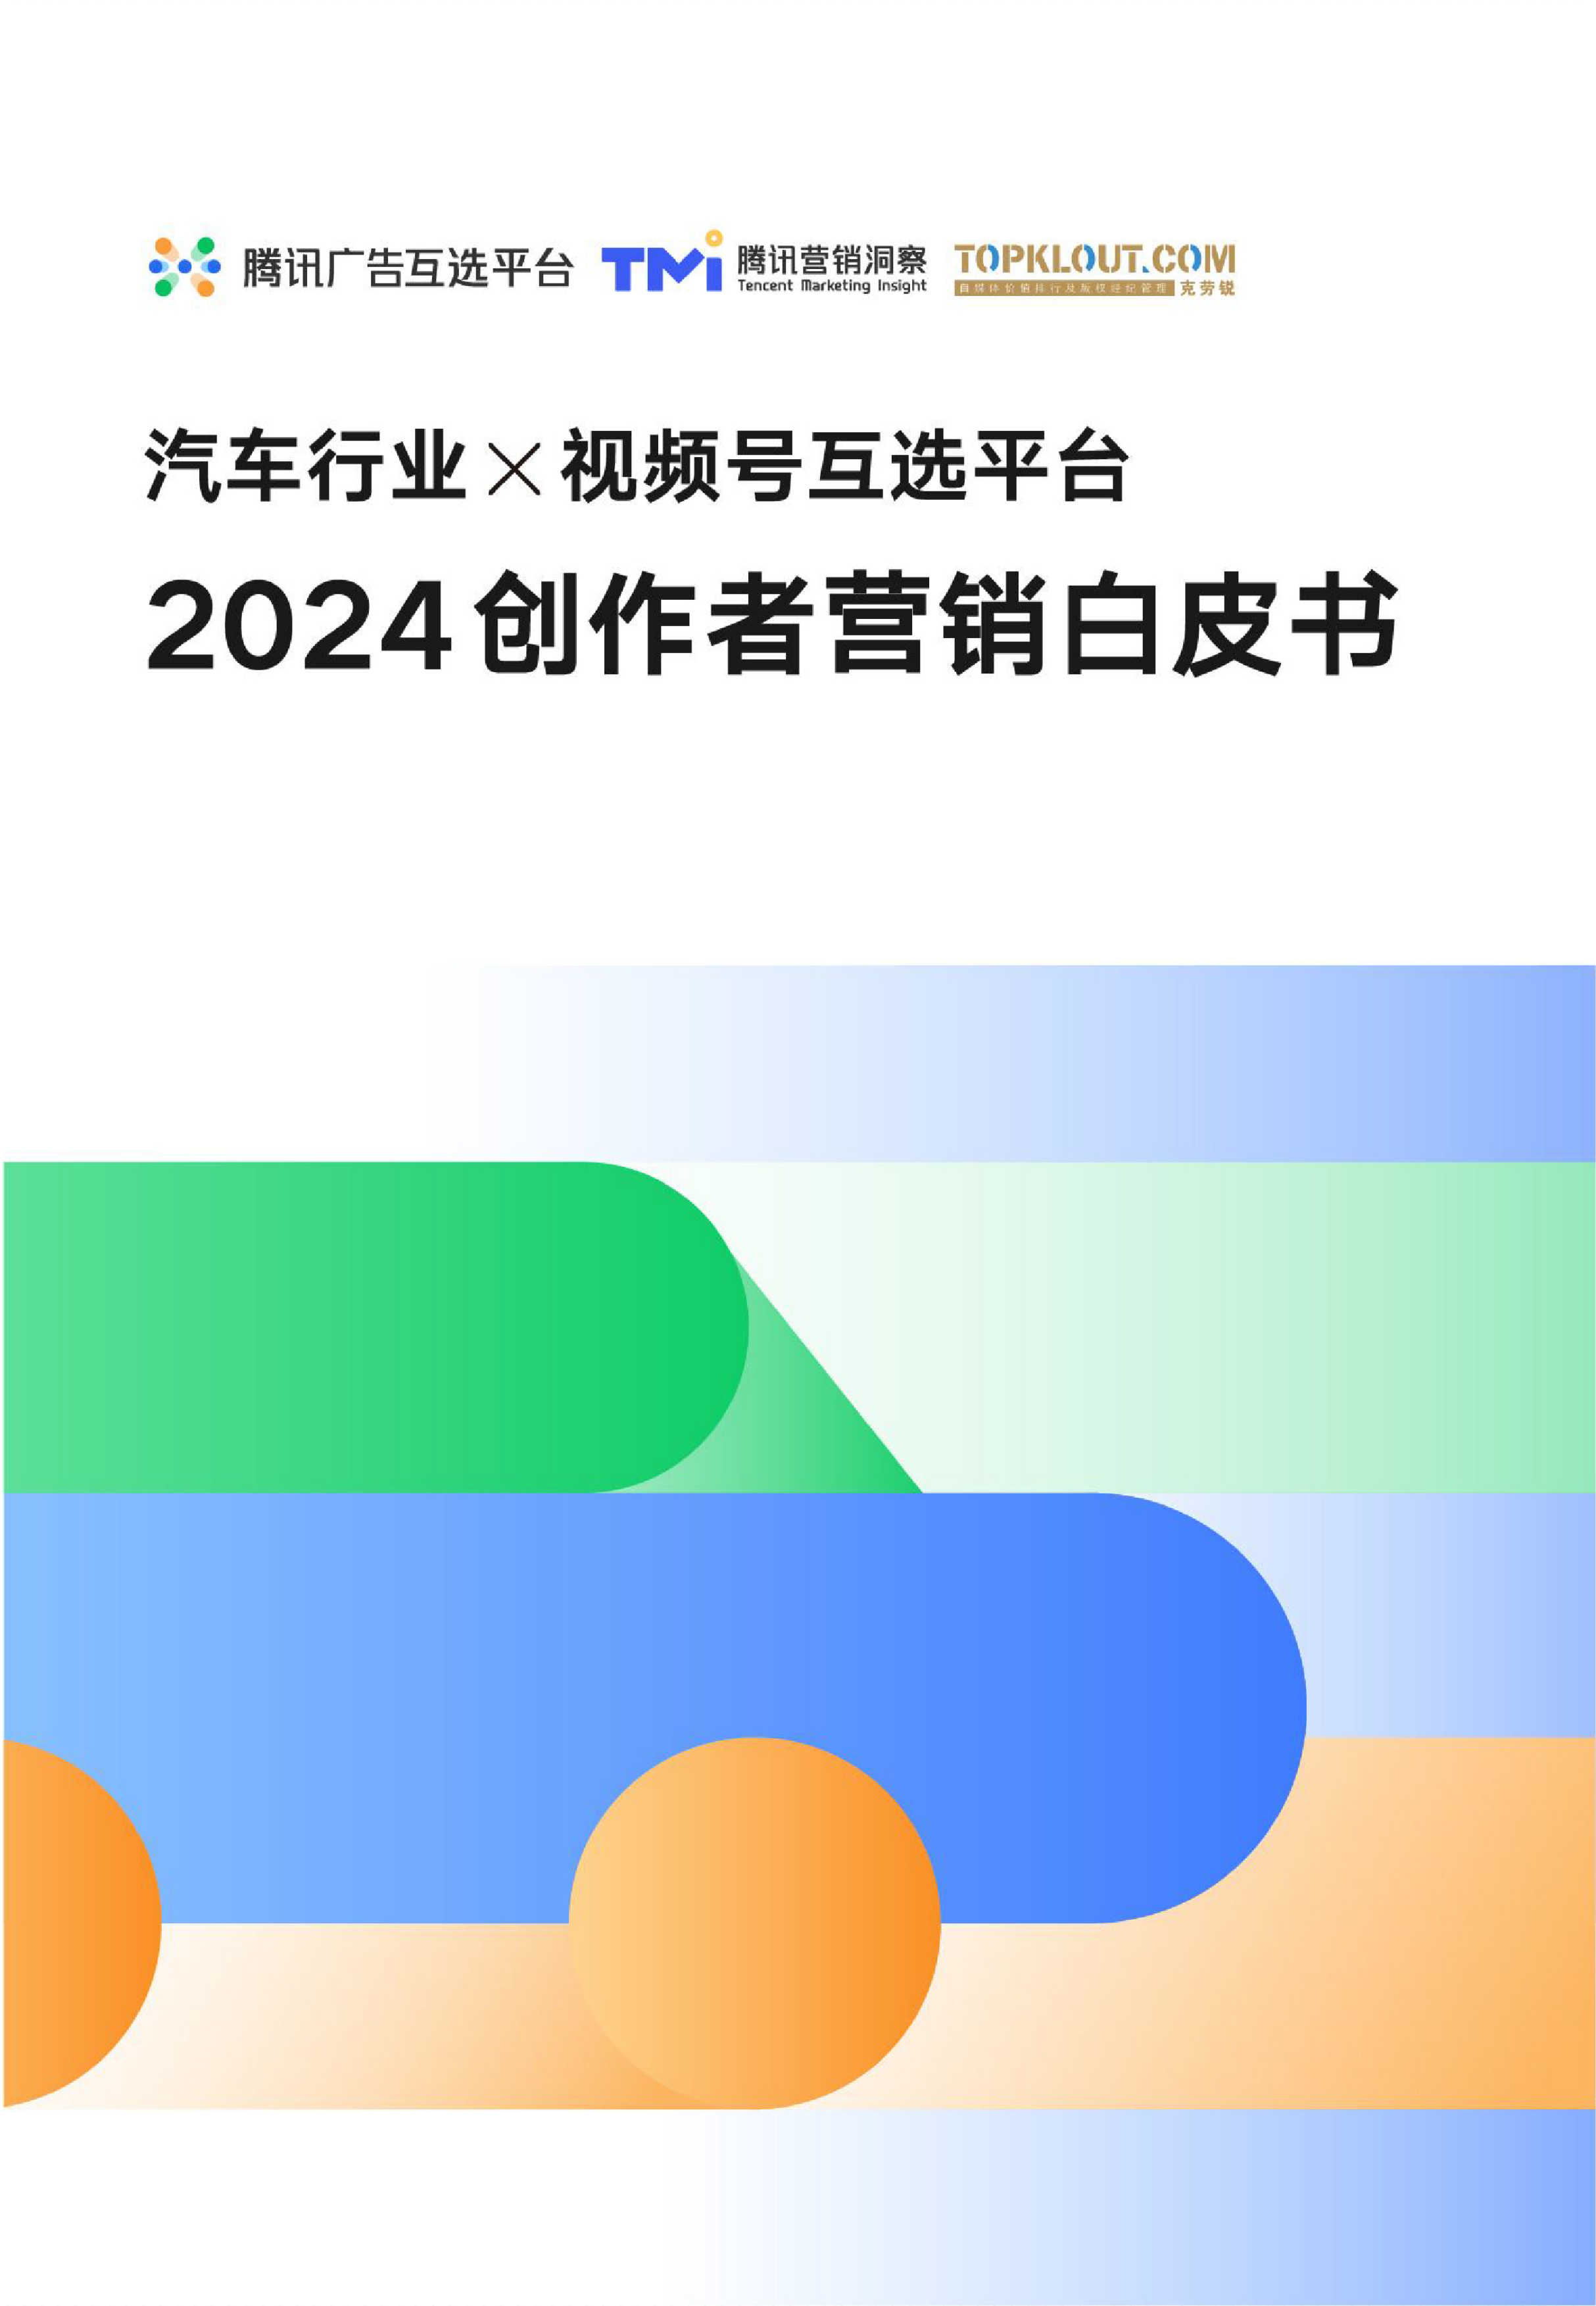 汽车行业x视频号互选平台2024创作者营销白皮书-腾讯x克劳锐-202404.pdf